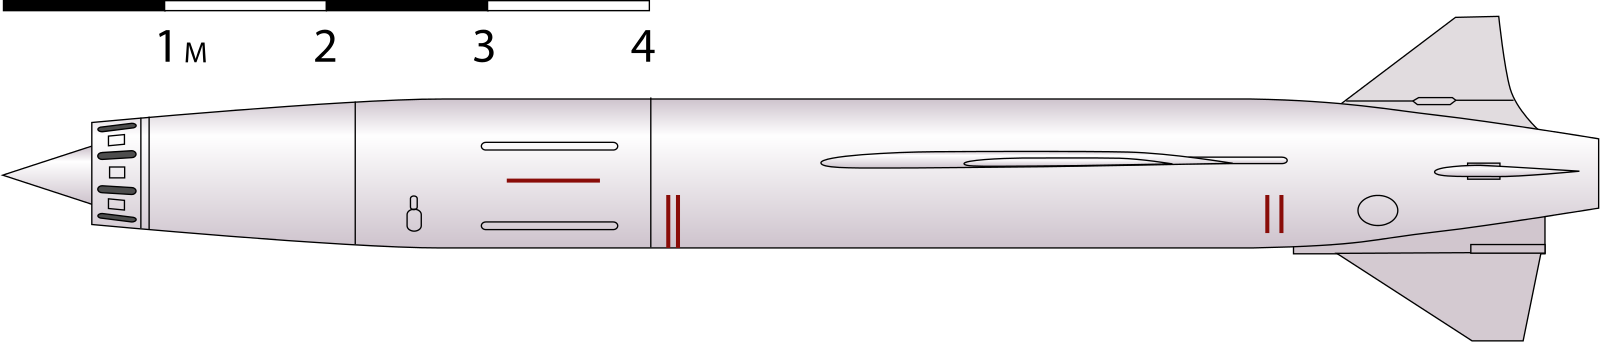 Противокорабельная ракета п-700 комплекса ракетного оружия «гранит» — global wiki. wargaming.net